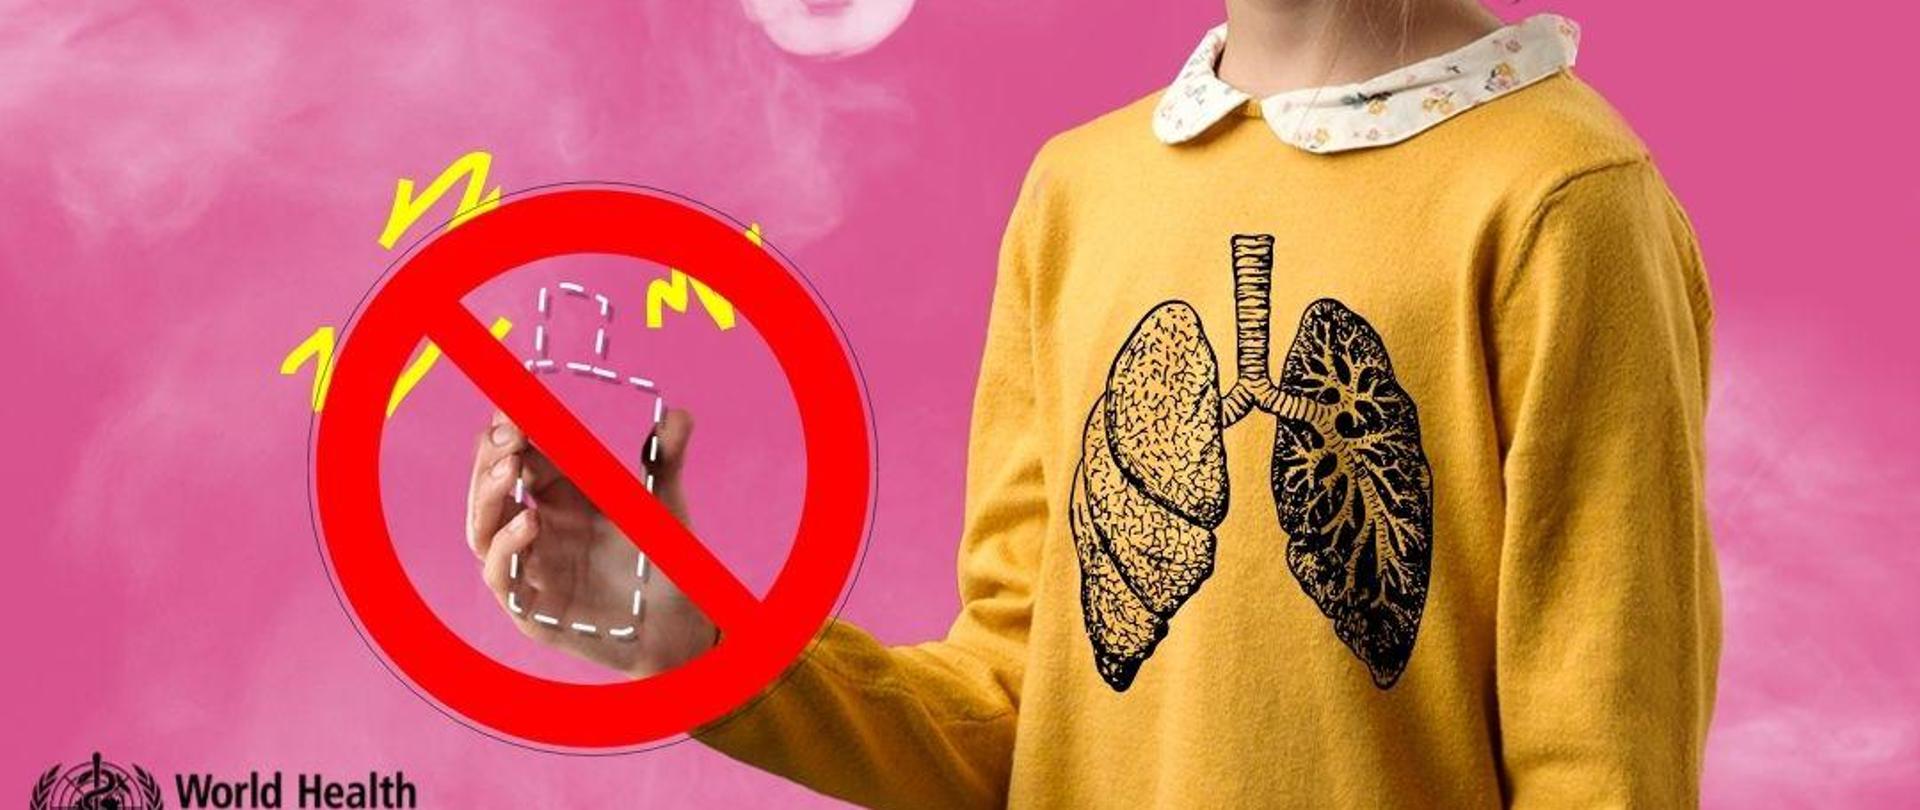 Grafika na różowym tle, w centralnym punkcie dziewczynka w żółtej bluzce z nadrukiem płuc - jedno zdrowe, drugie palacza. Trzyma w dłoni przekreślonego e-papierosa, z ust wydmuchuje dym. U góry logo Inspekcji Sanitarnej i napis "Światowy Dzień bez Tytoniu 31 maj 2024 r., na dole logo WHO.